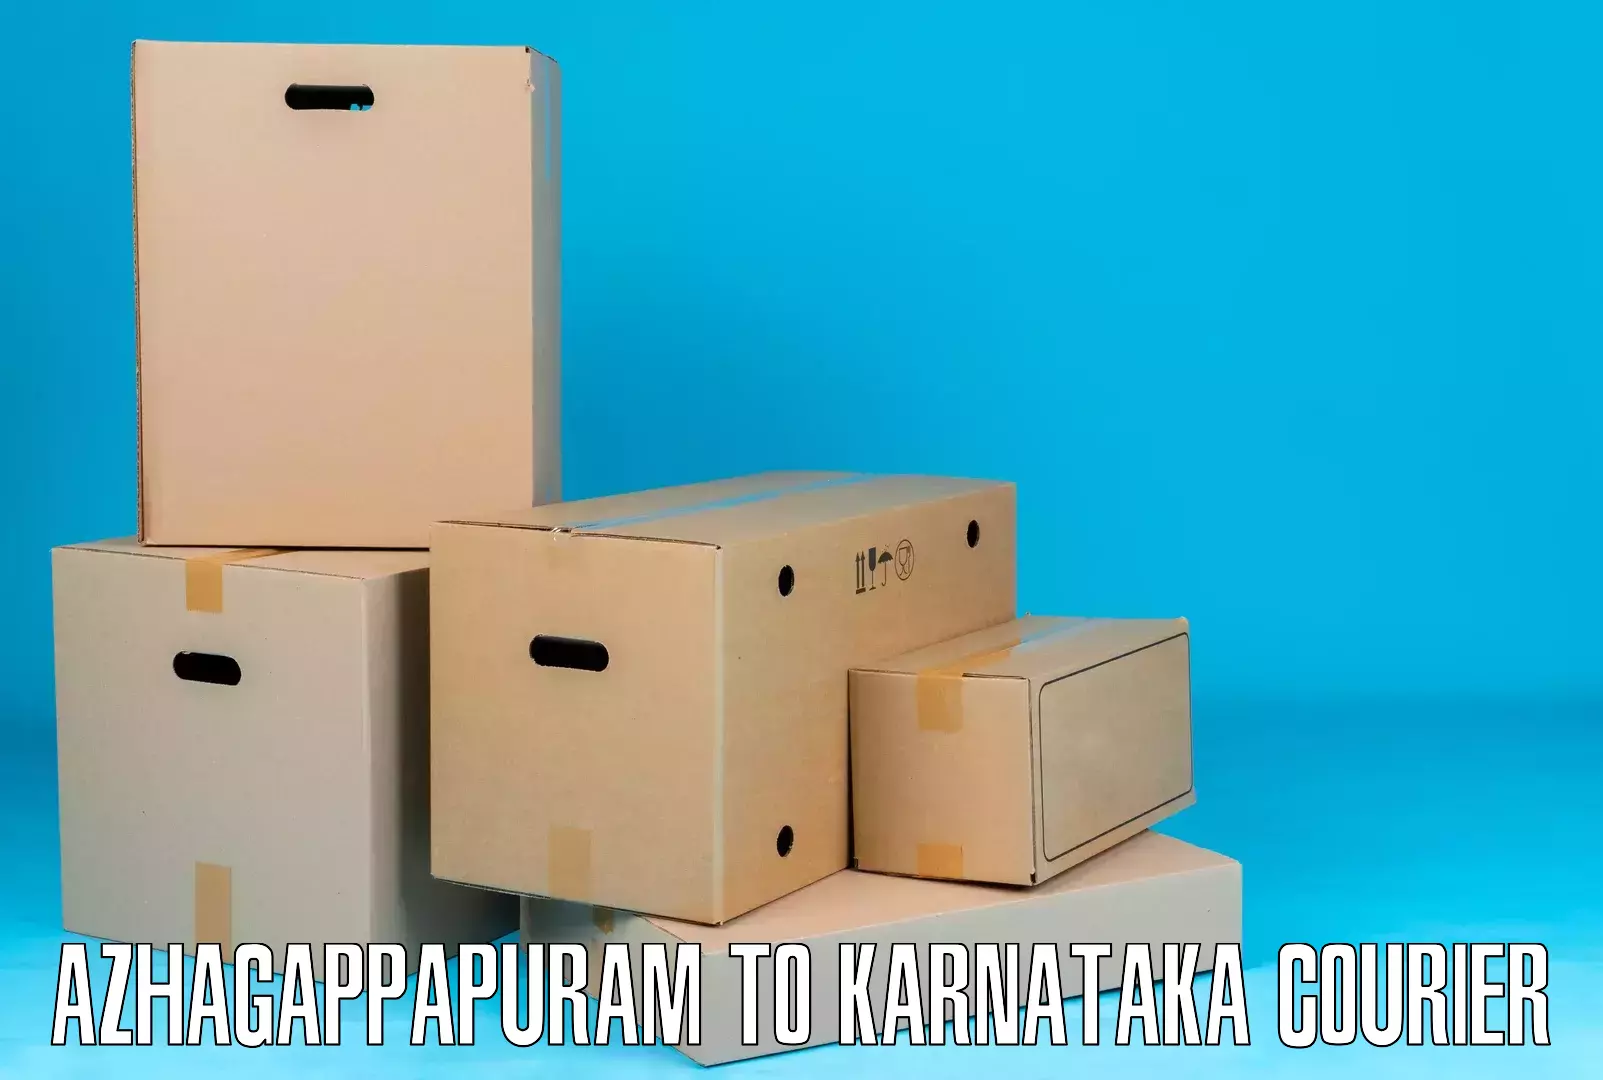 Cargo courier service Azhagappapuram to Pavagada